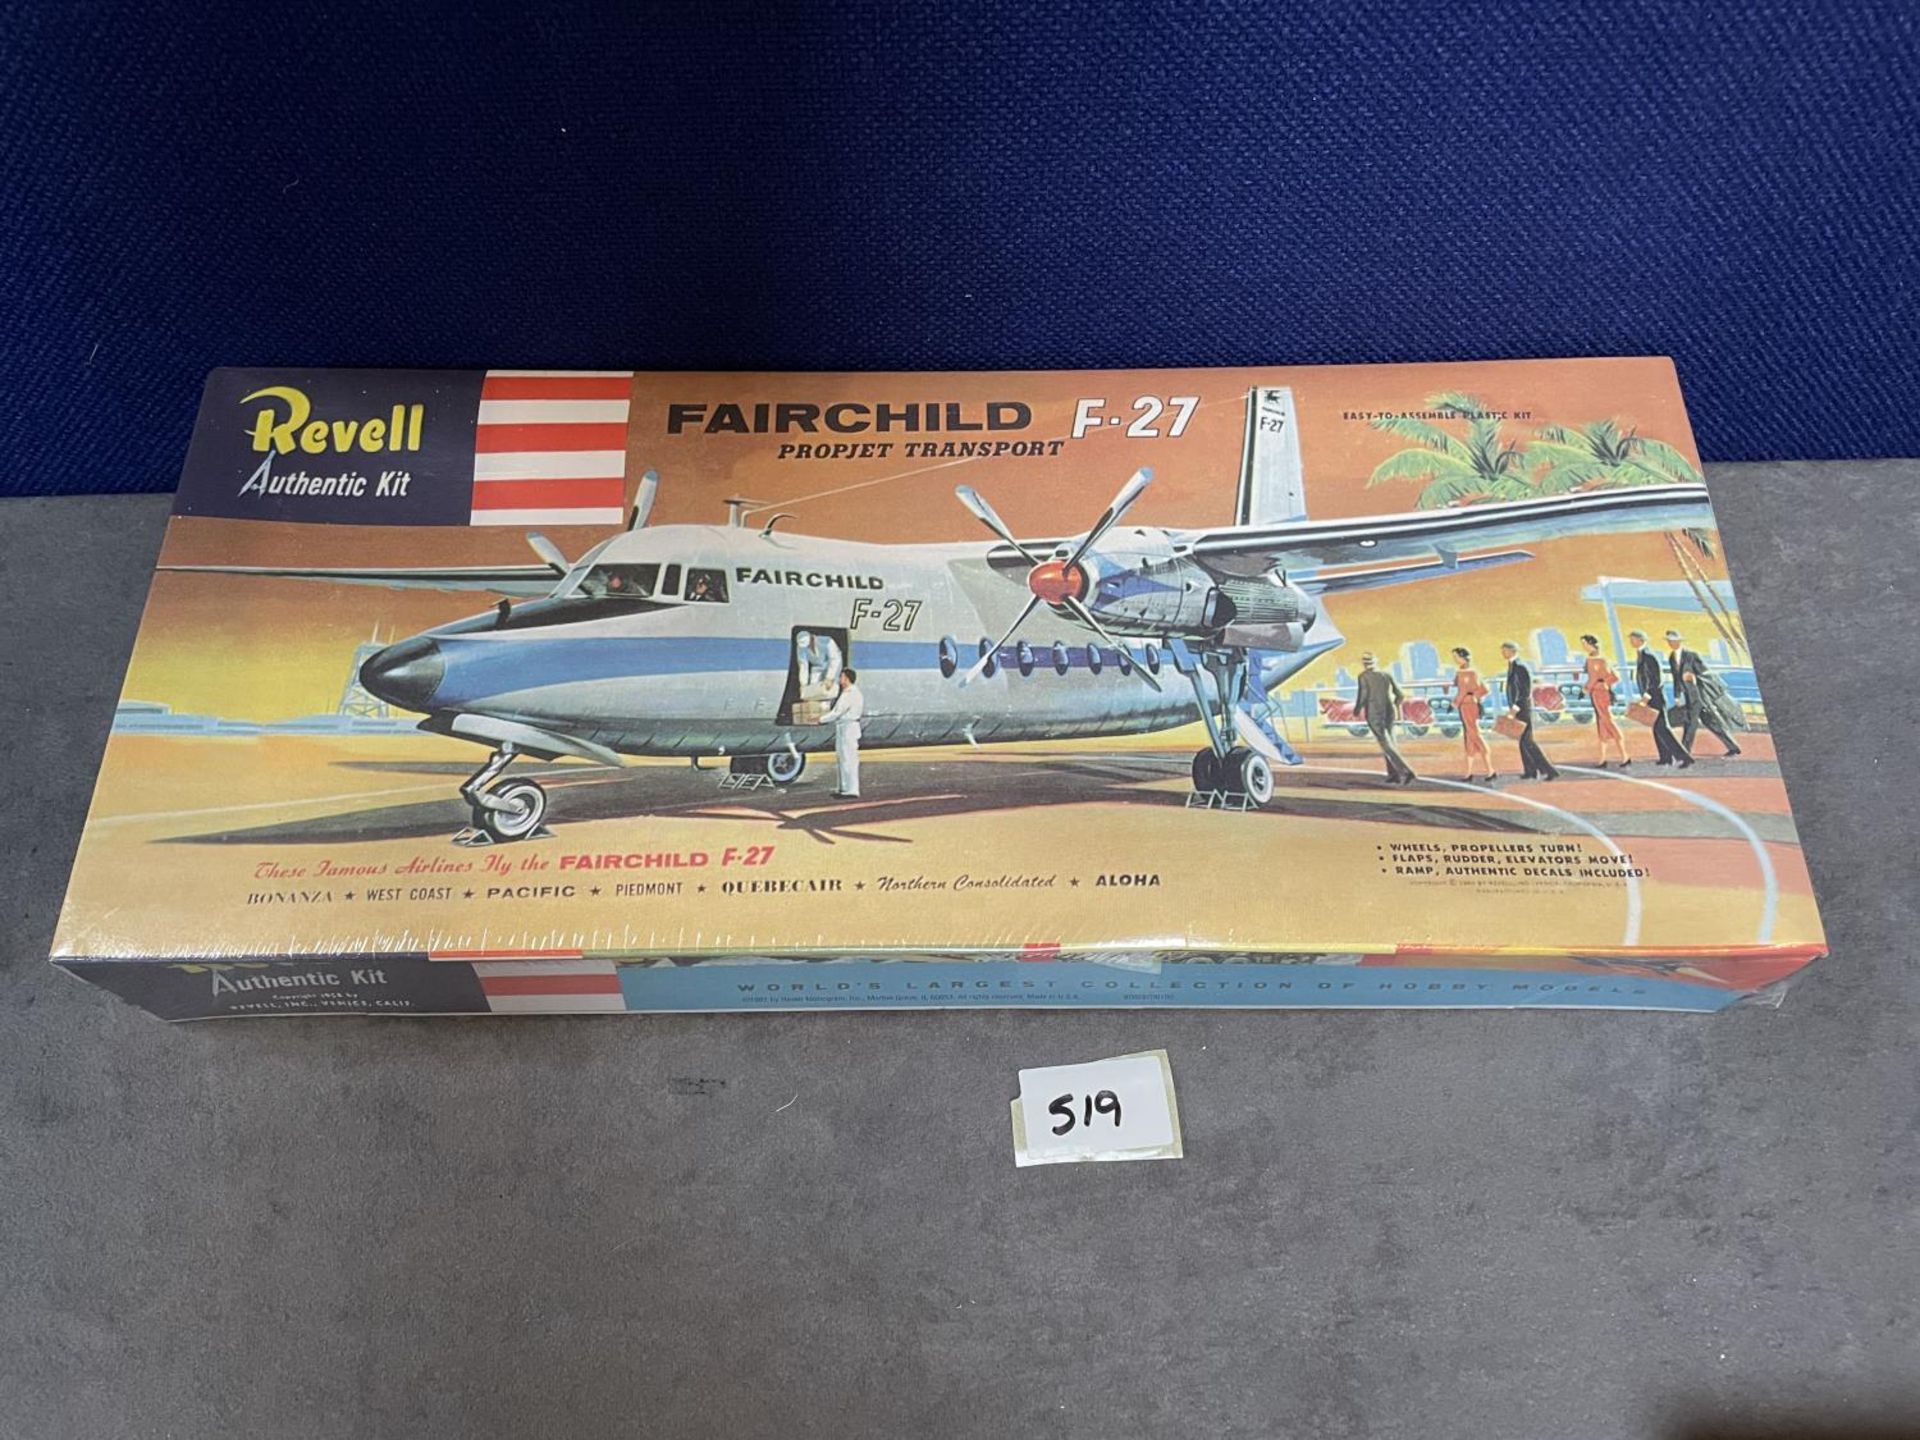 Revell #H297 Fairchild F-27 Propjet Transport Revell | No. H-297 | 1:94 1958 Sealed